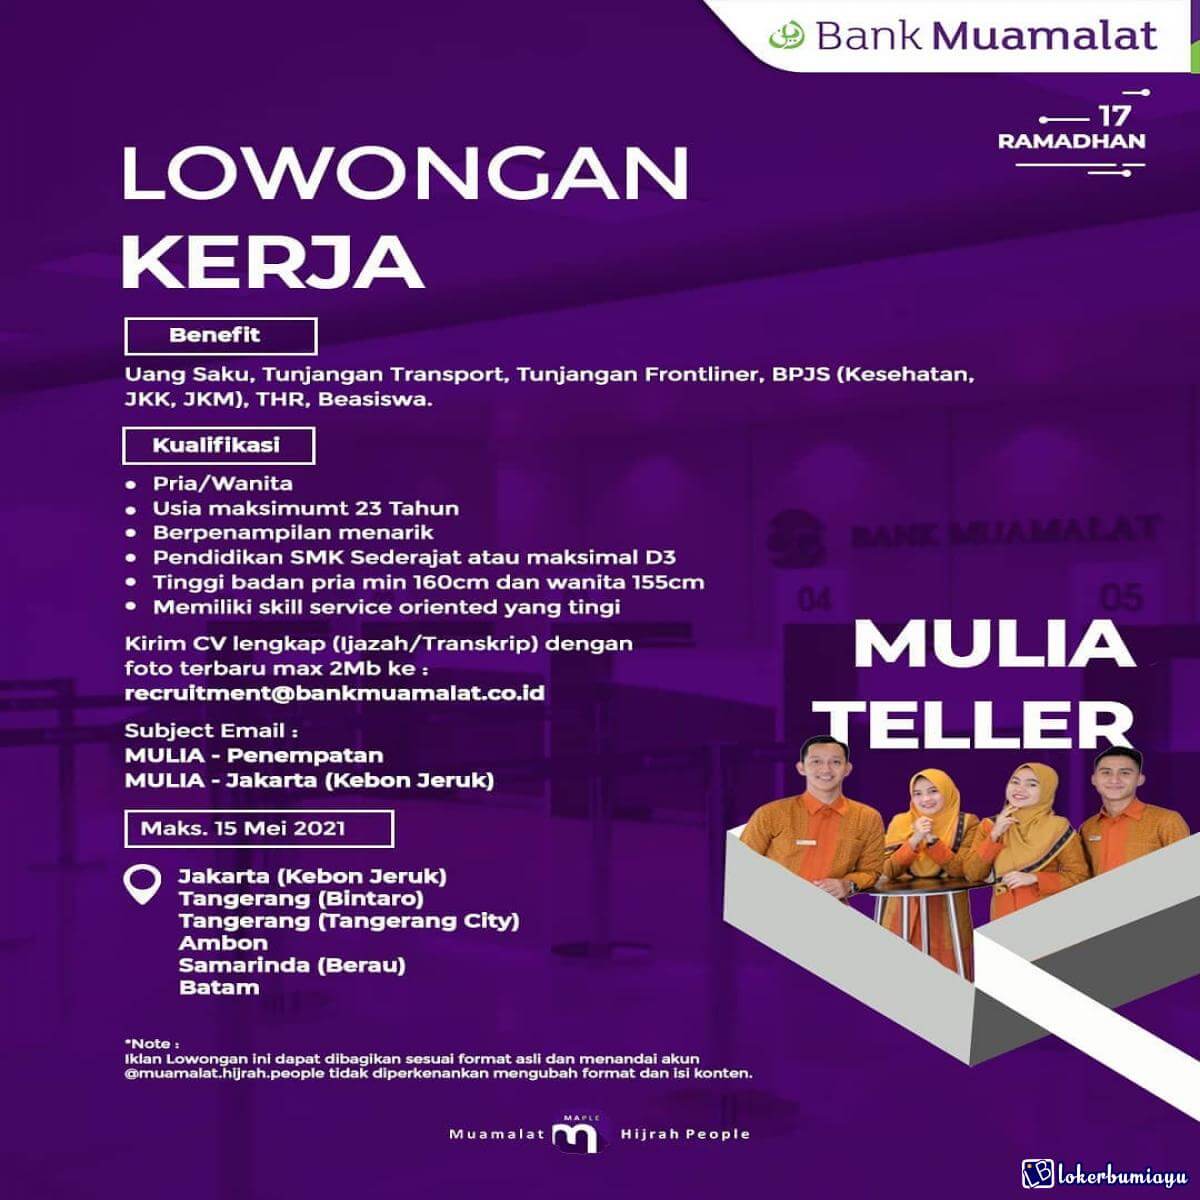 Bank Muamalat Indonesia